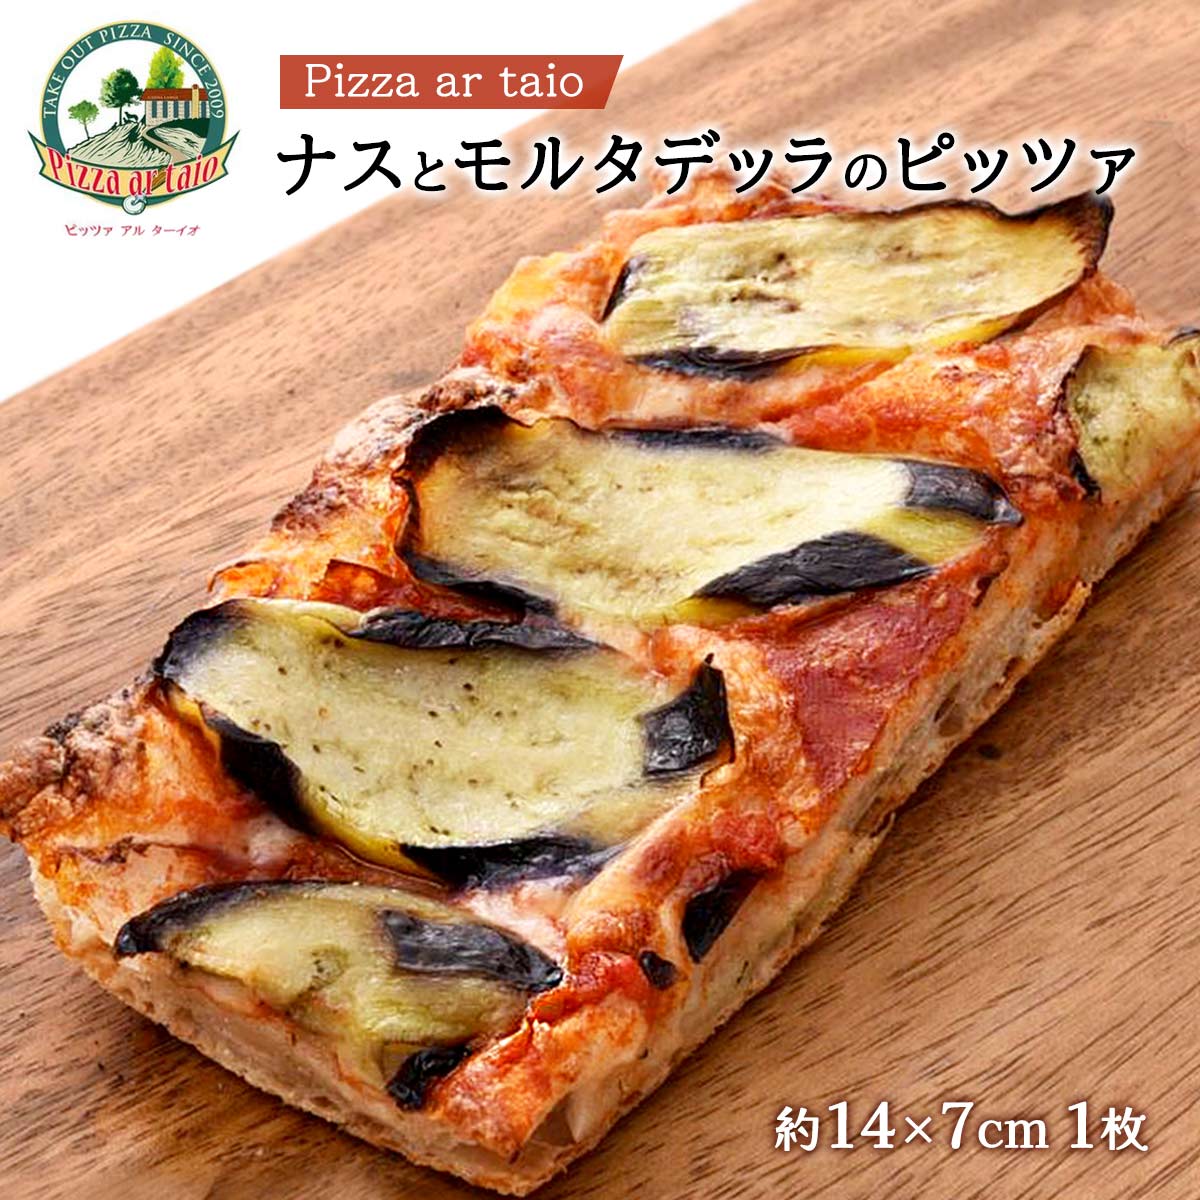 [Pizza ar taio ピッツァ アルターイオ] 